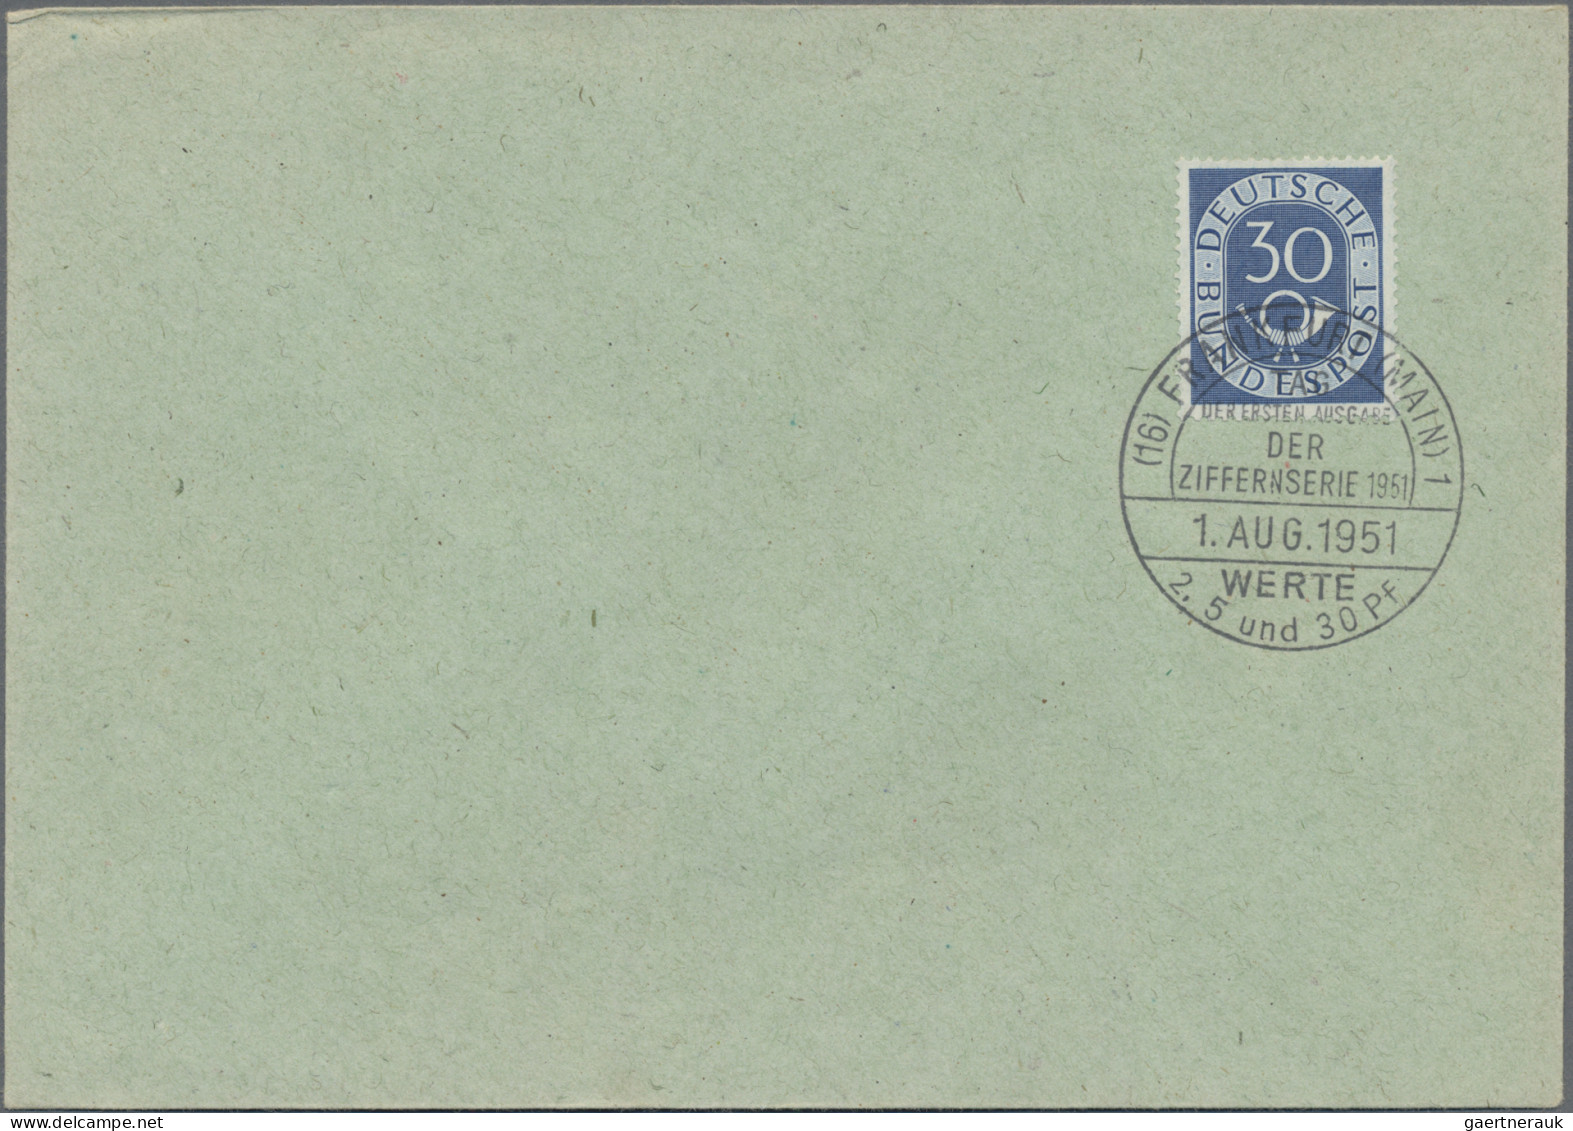 Bundesrepublik Deutschland: 1951, Posthorn 2-40Pfg., 60 Pfg. jeweils einzeln (2P